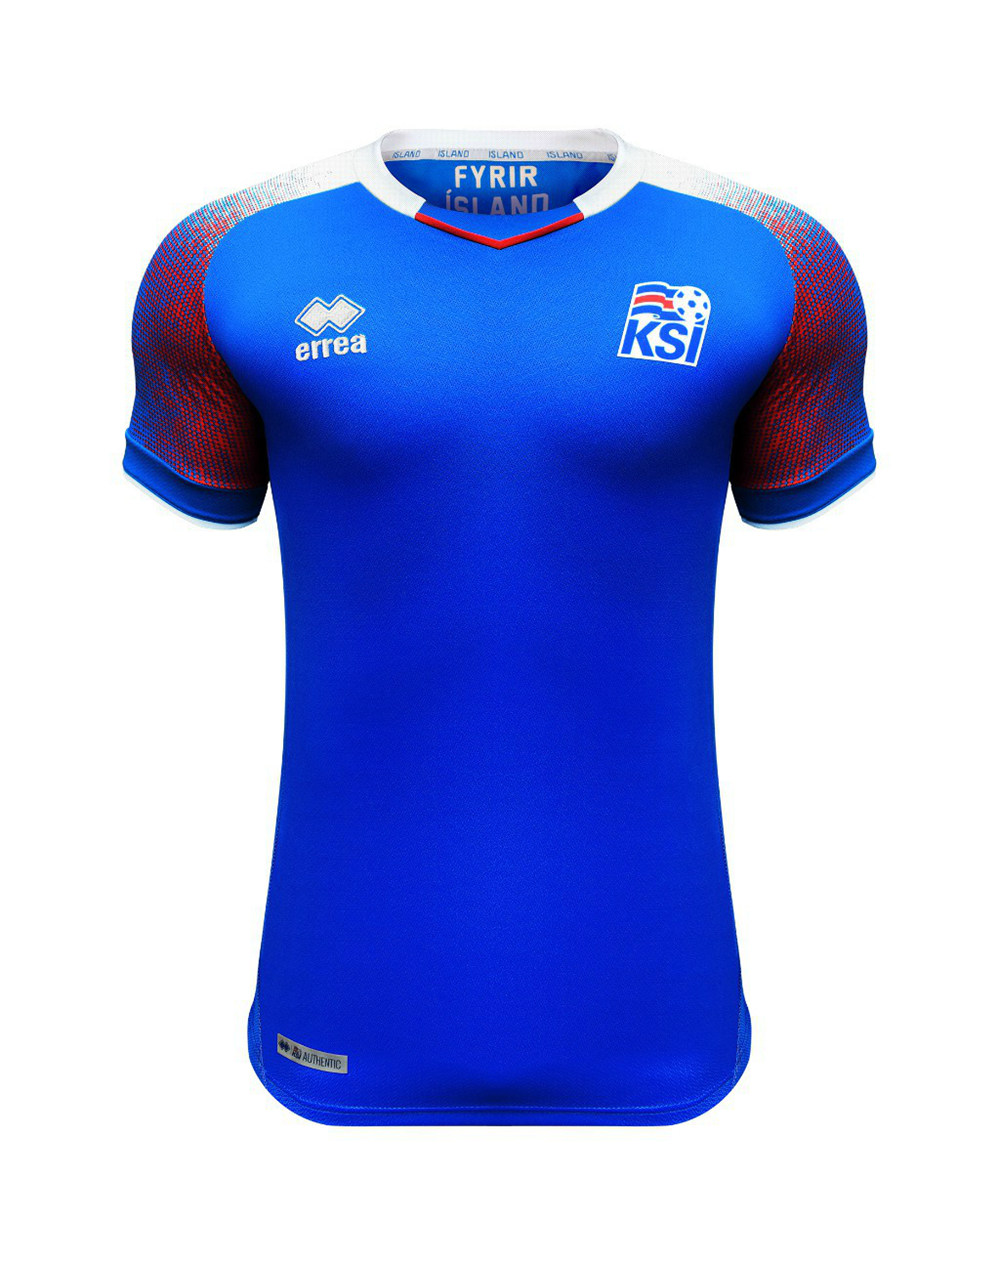 冰岛国家队2018世界杯球衣发布